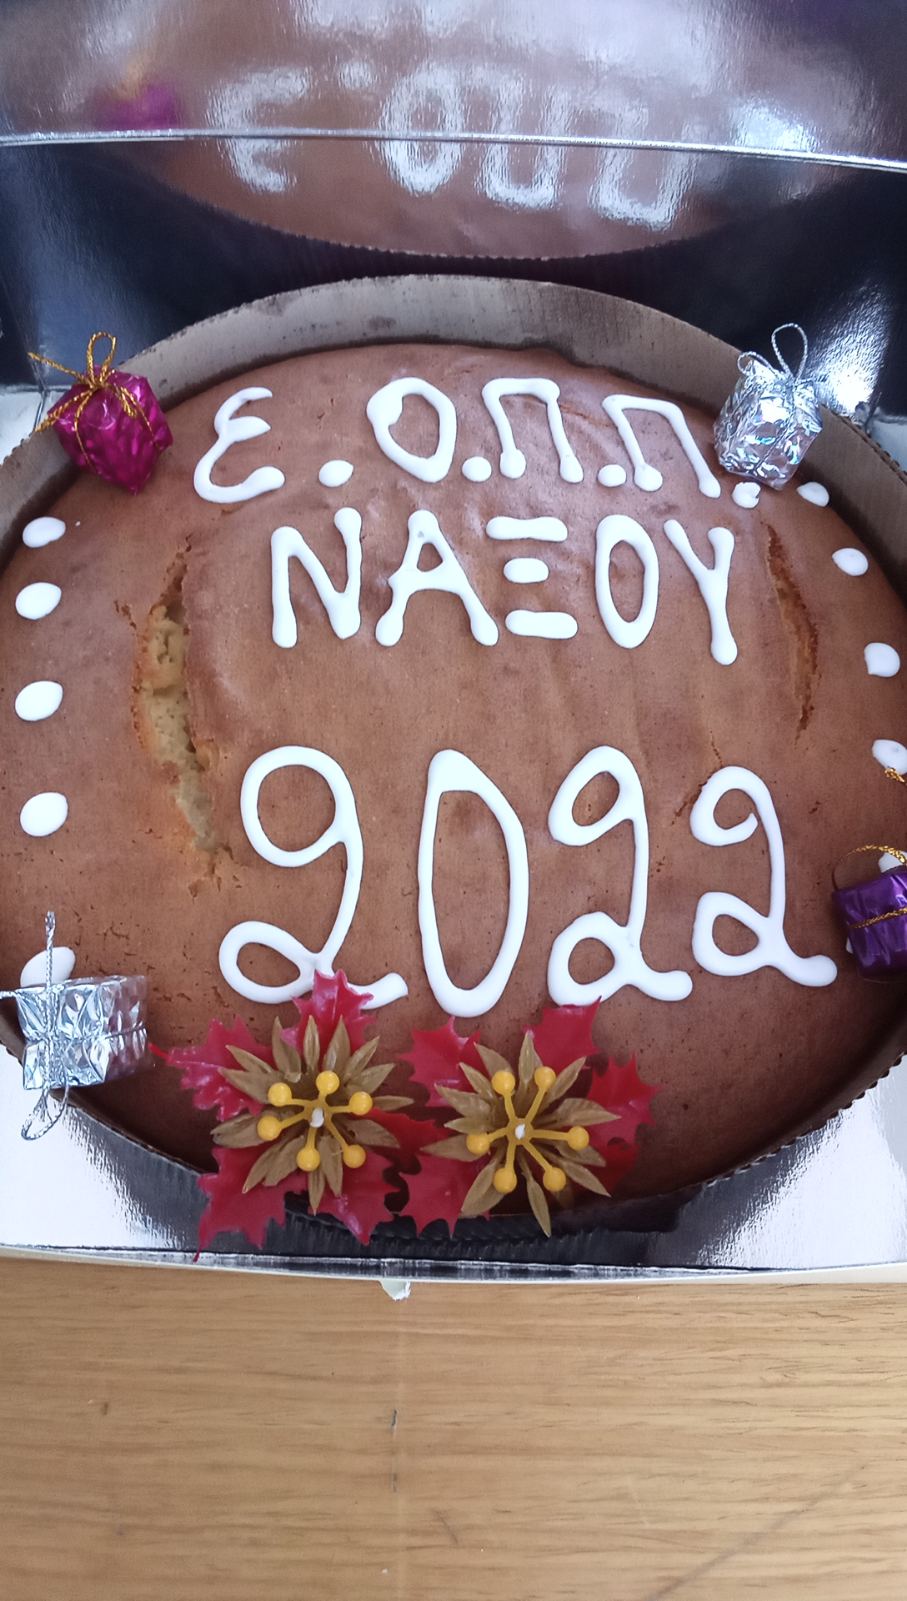 ΕΟΠΠ Νάξου: Η κοπή της πρωτοχρονιάτικης πίτας - Στην πρεσβυτέρα το φλουρί (φωτό & video)